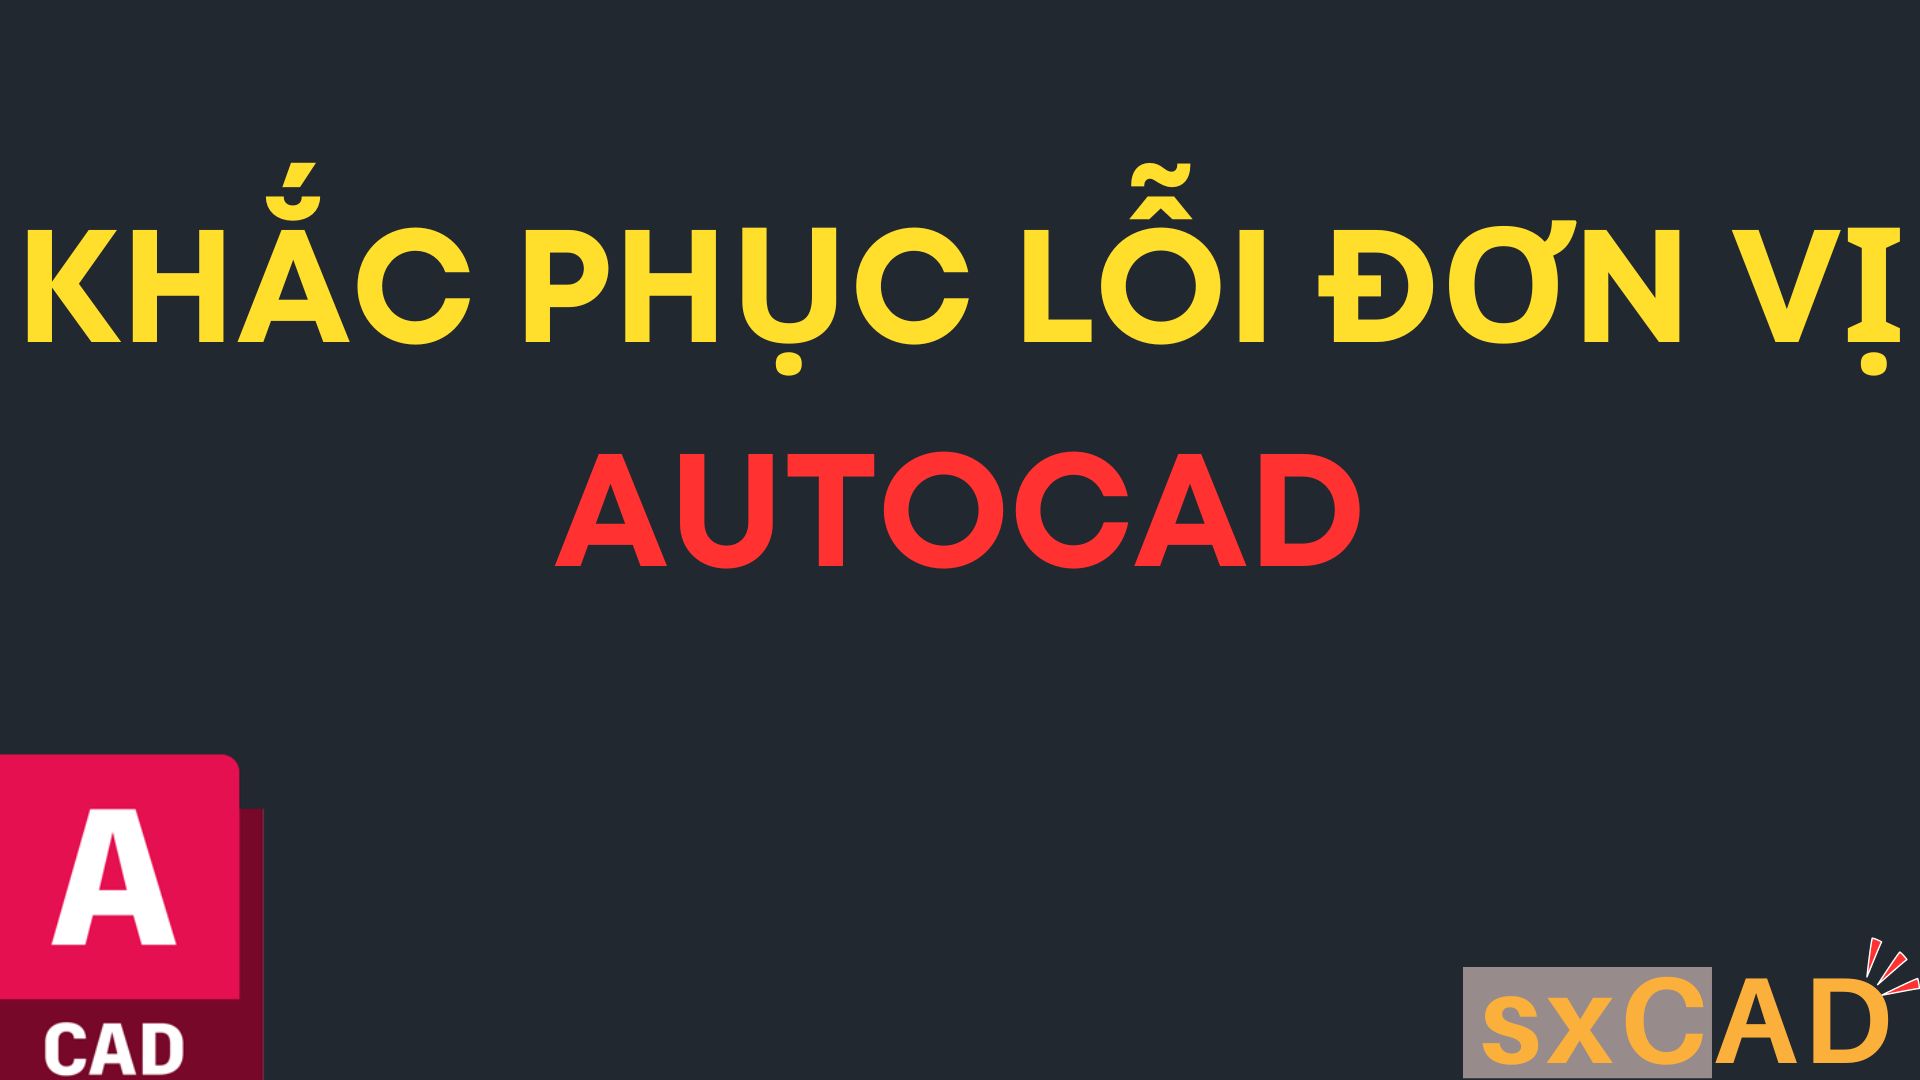 Khắc phục lỗi đơn vị AutoCAD